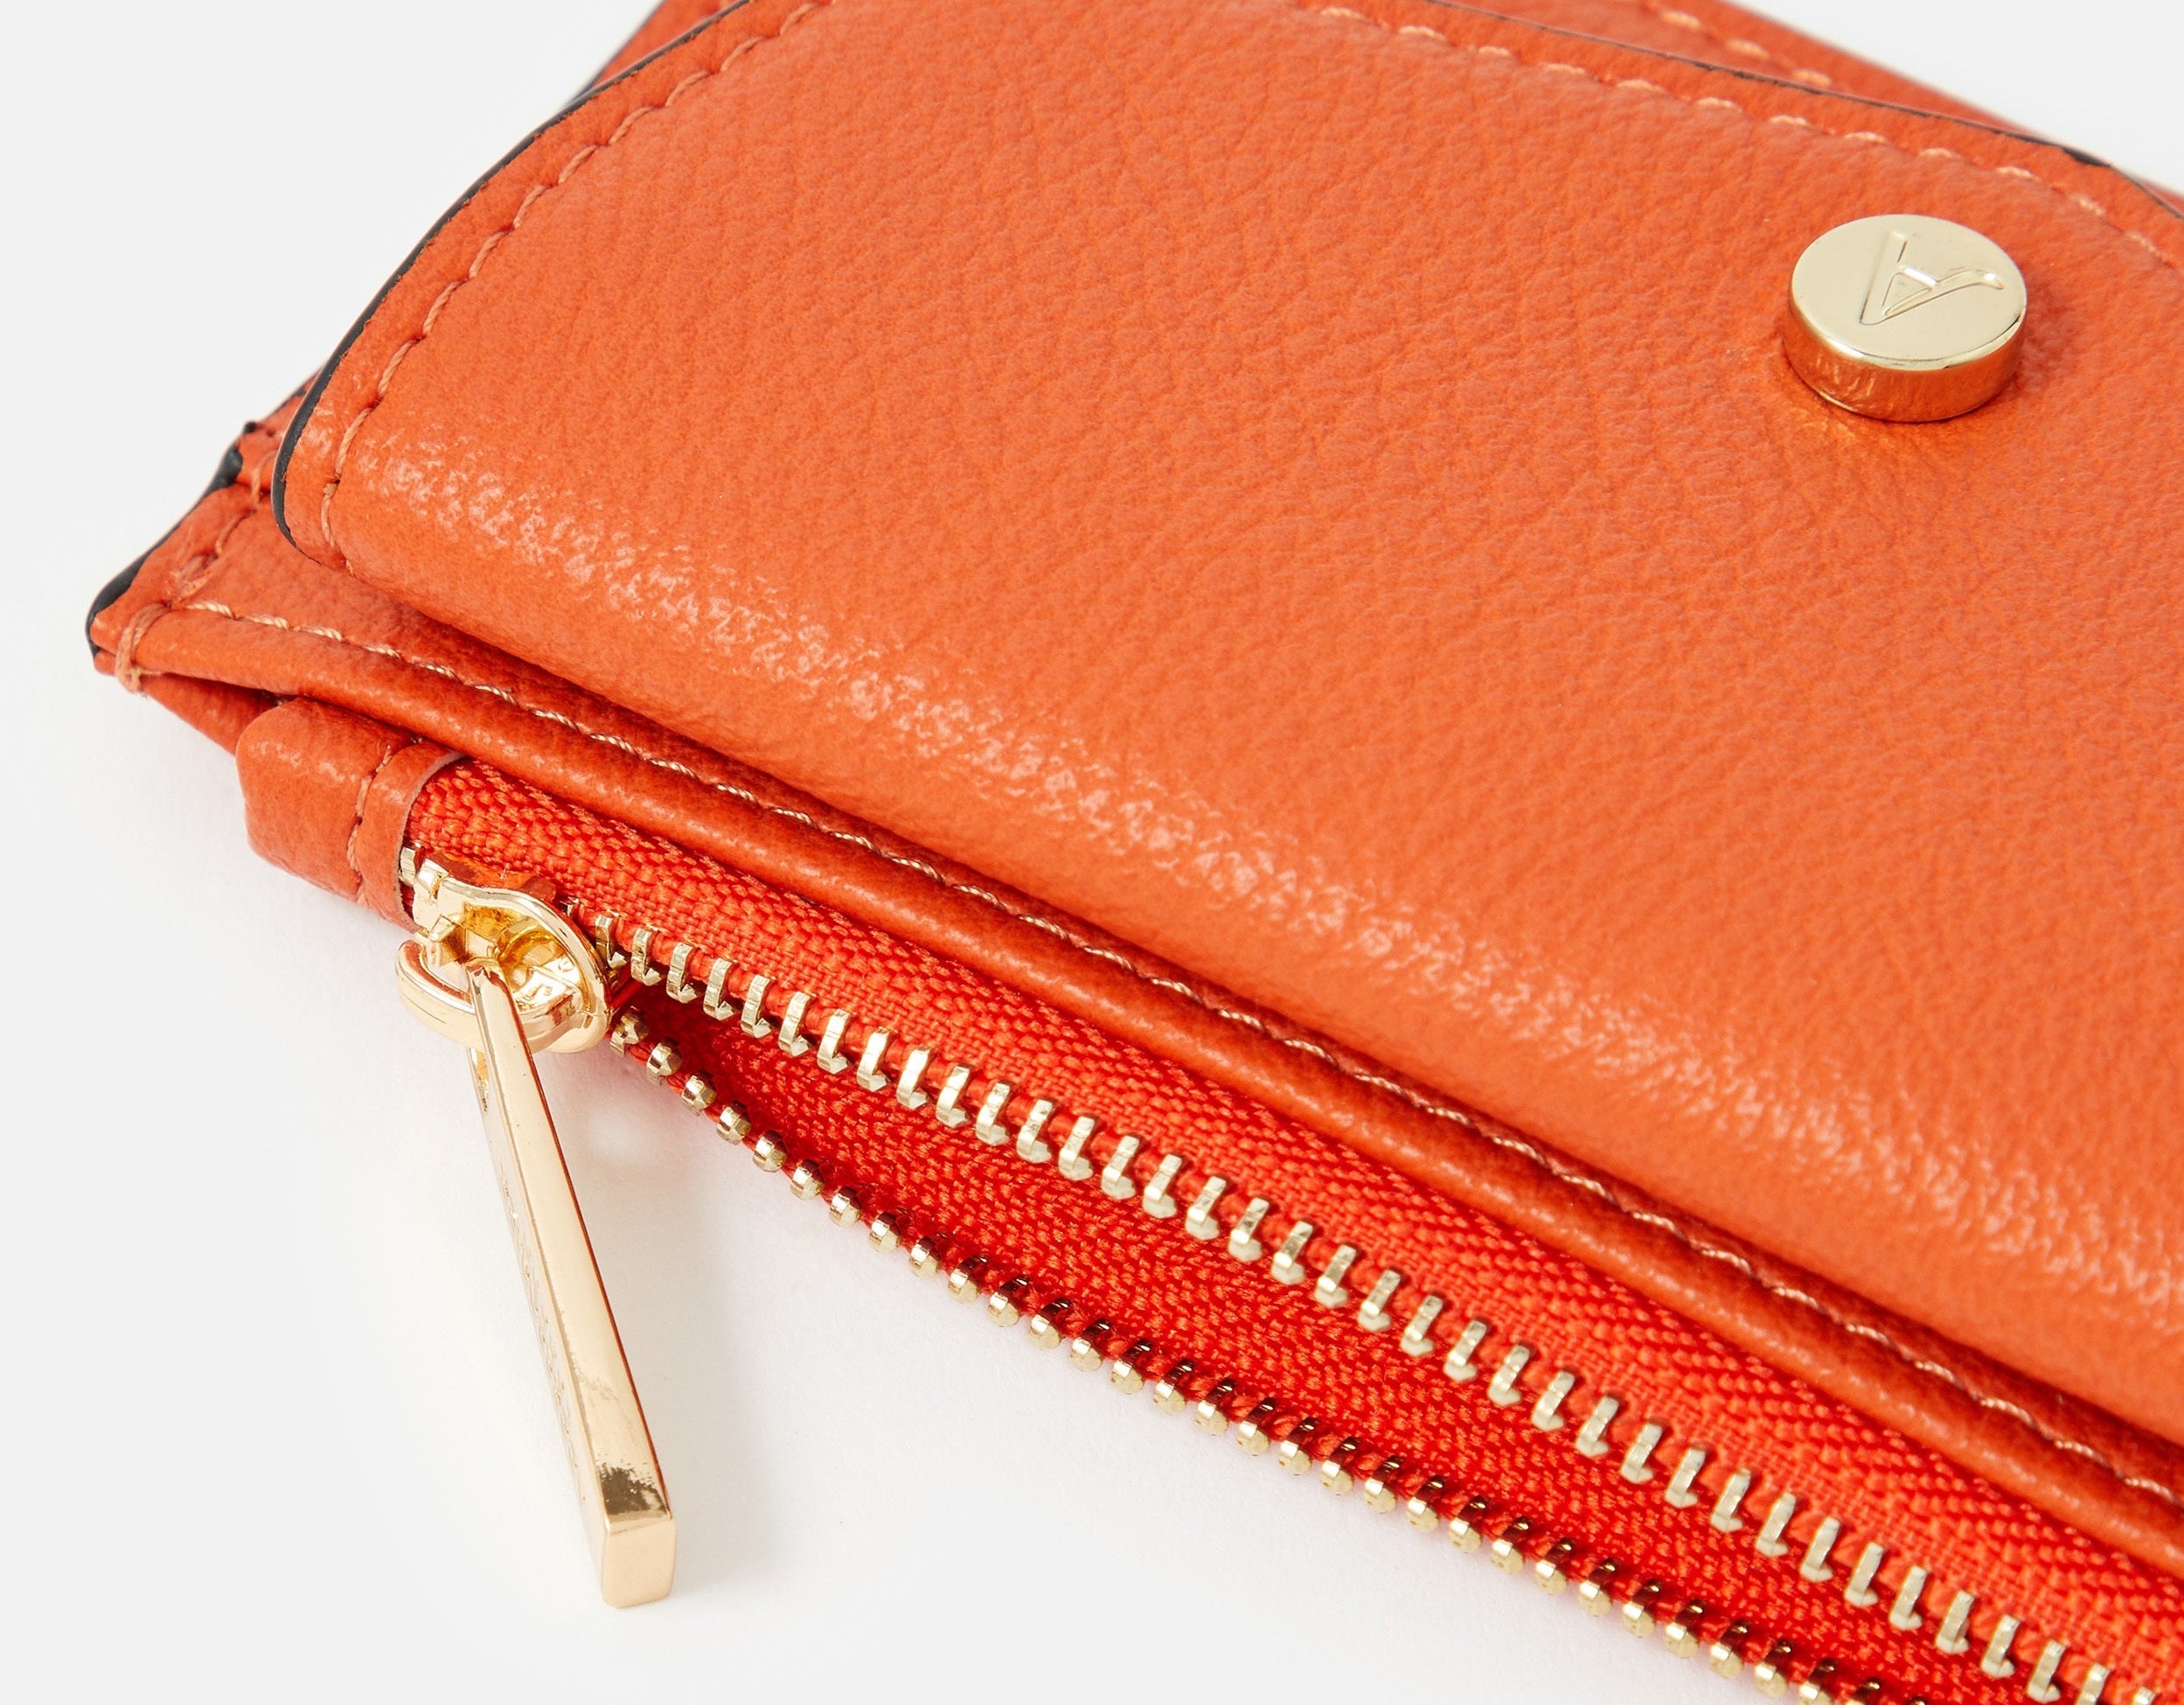 Accessorize London women's orange Card Pocket Purse wallet